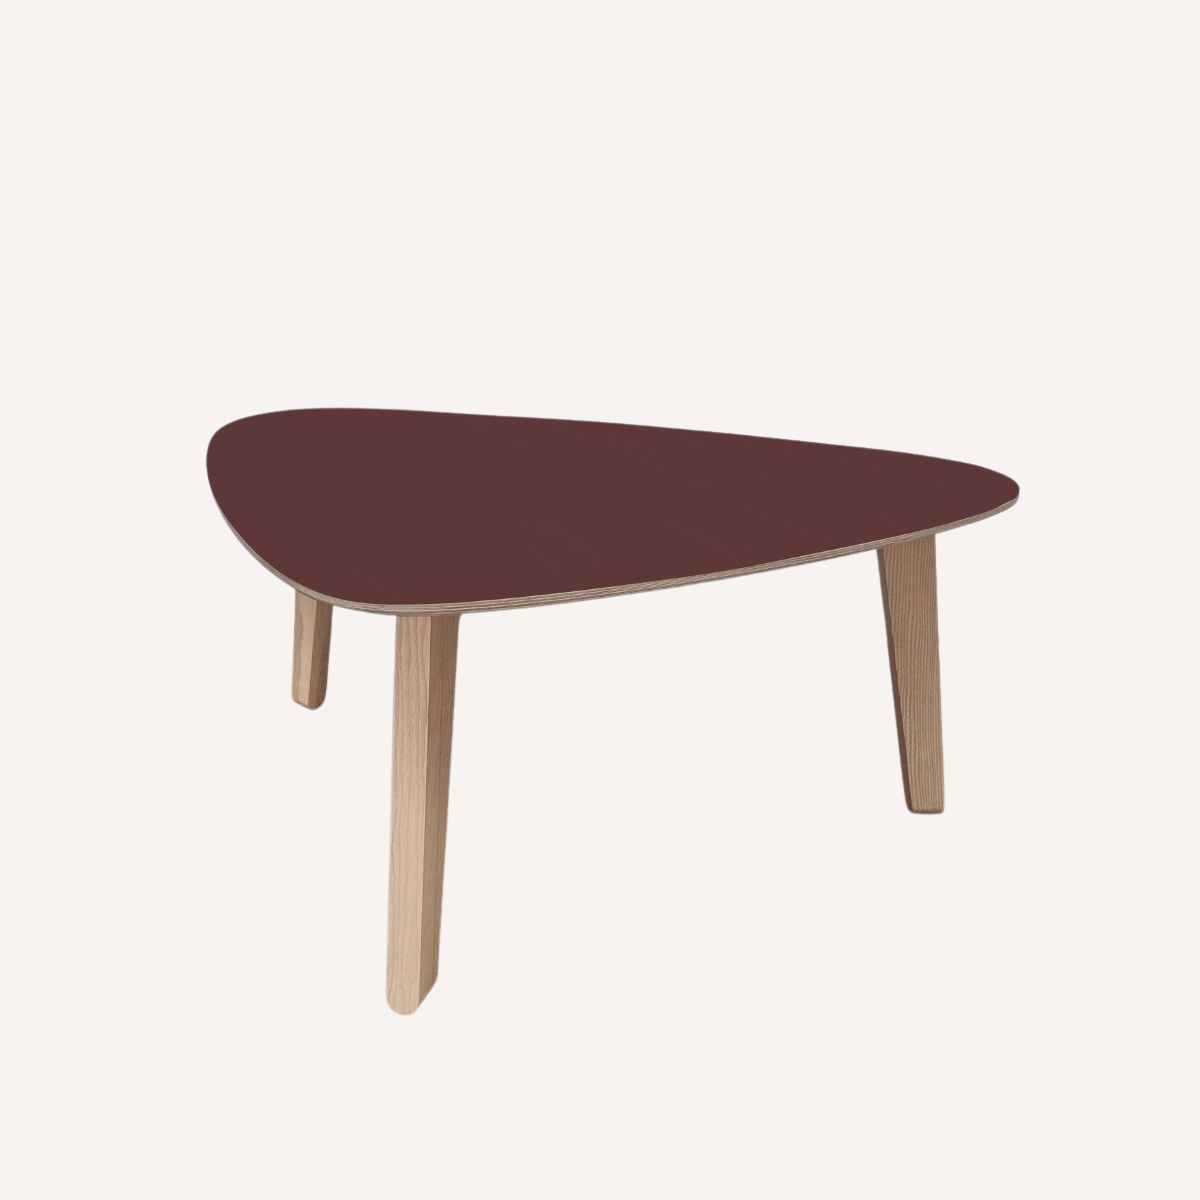 Table basse rouge "Stone" française & design en bois de frêne sain et durable par Skog Design